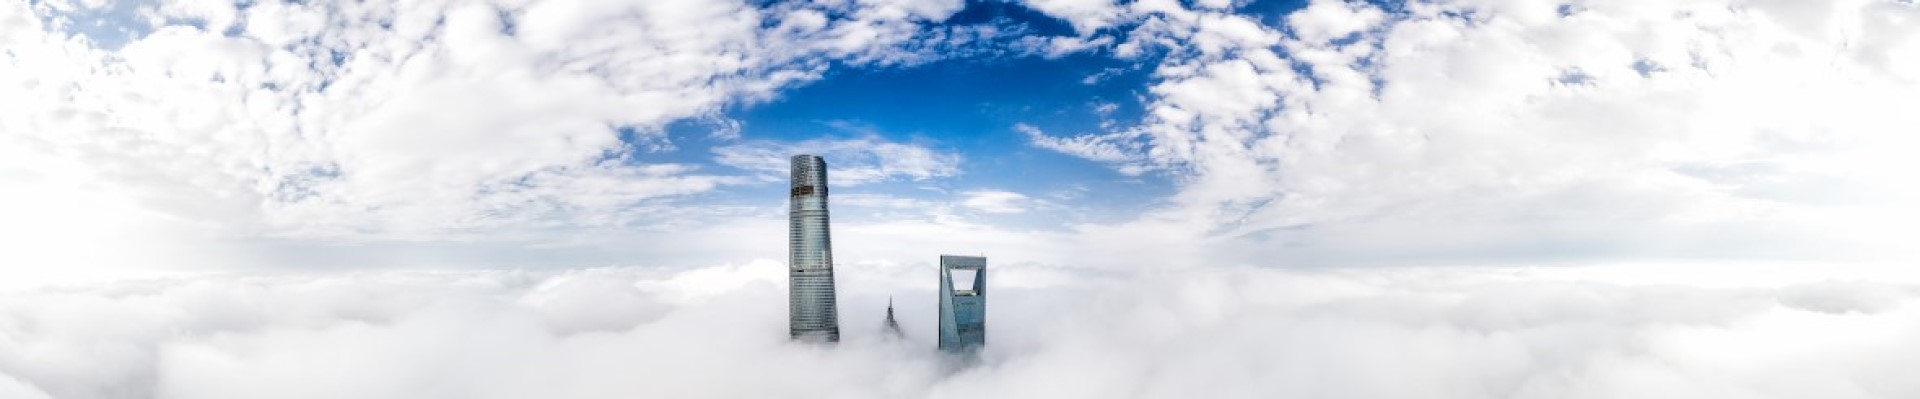 Шанхайская башня-Самое высокое здание в Шанхае